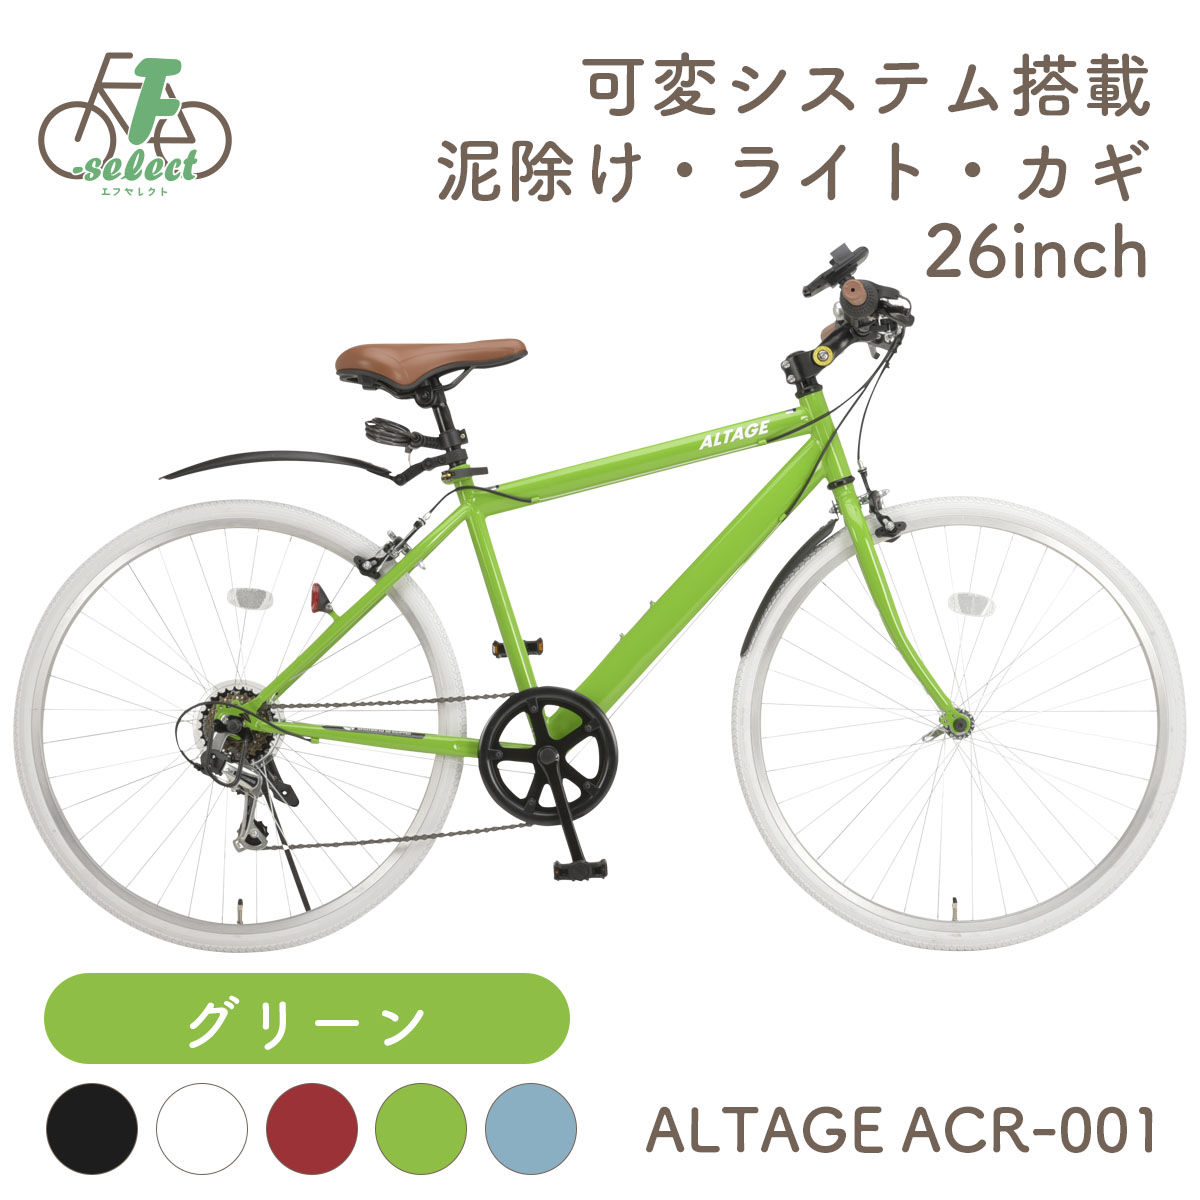 クロスバイク 自転車 26インチ 完成品出荷 / 置き配可能 泥除け ライト カギ 可変ステム 6段変速 軽量 アルテージ ALTAGE ACR-001